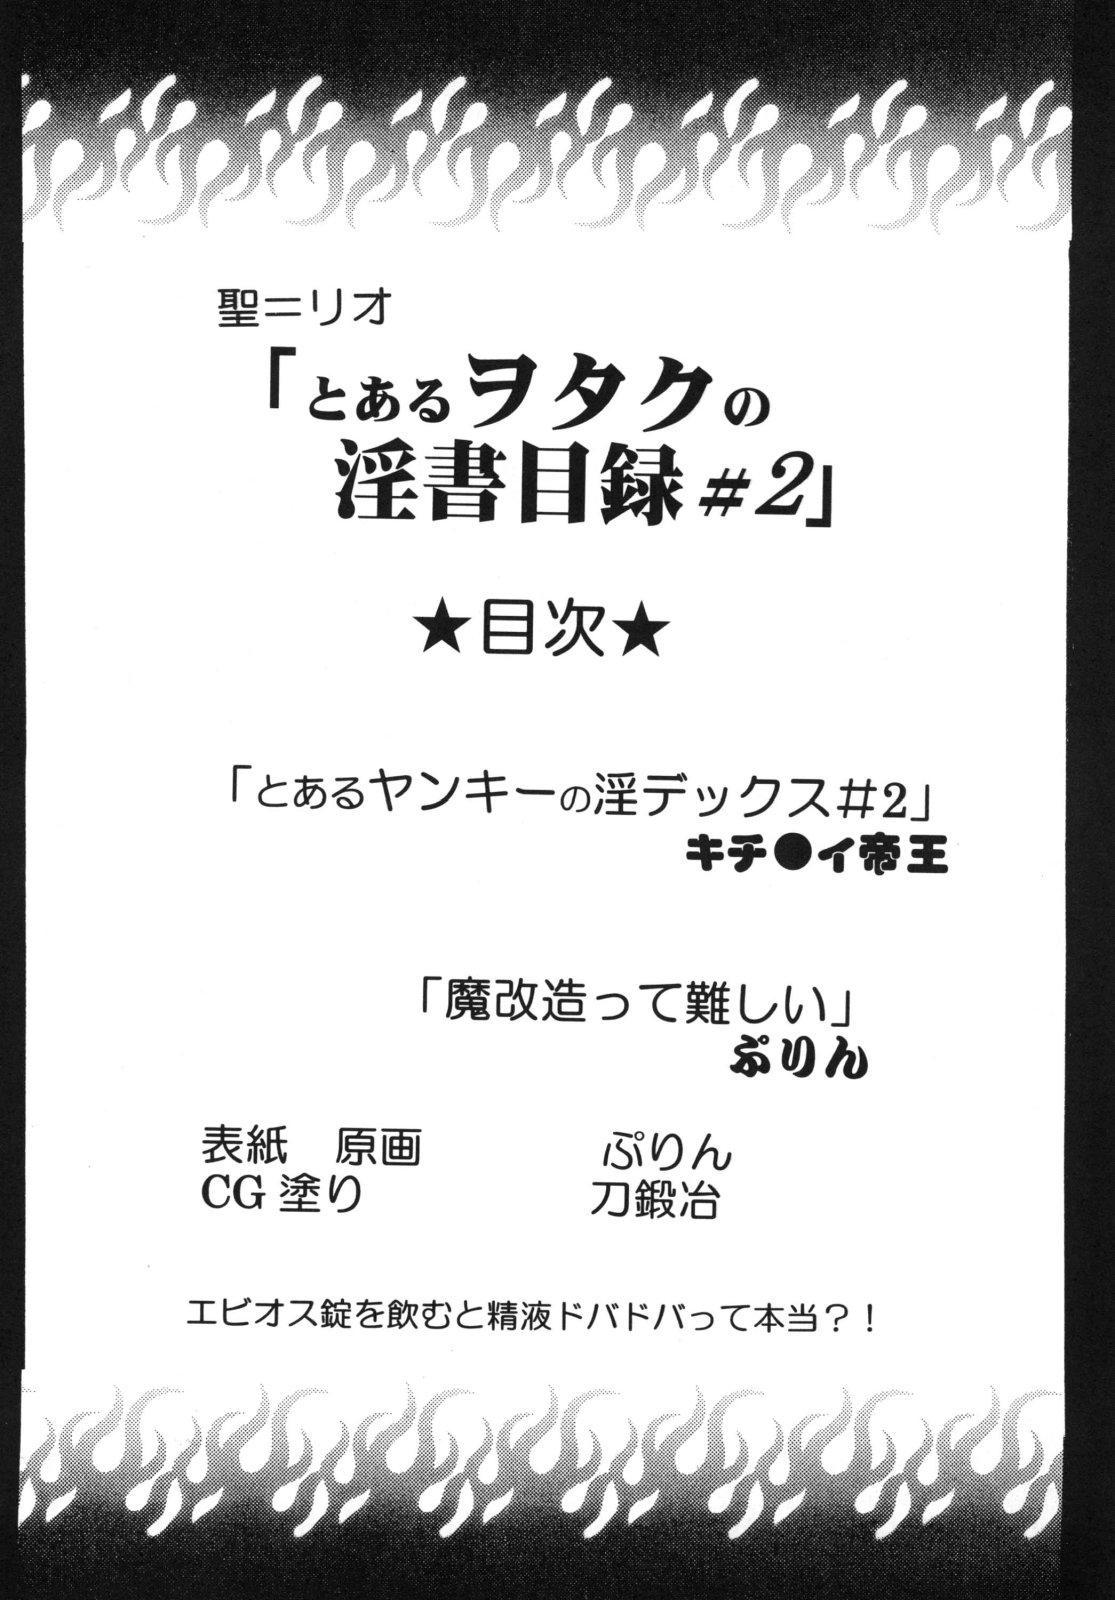 Leche Toaru Otaku no Index #2 | 某魔术的淫蒂克丝，某不良少年的茵蒂克丝#2 - Toaru majutsu no index | a certain magical index Anal Gape - Page 3